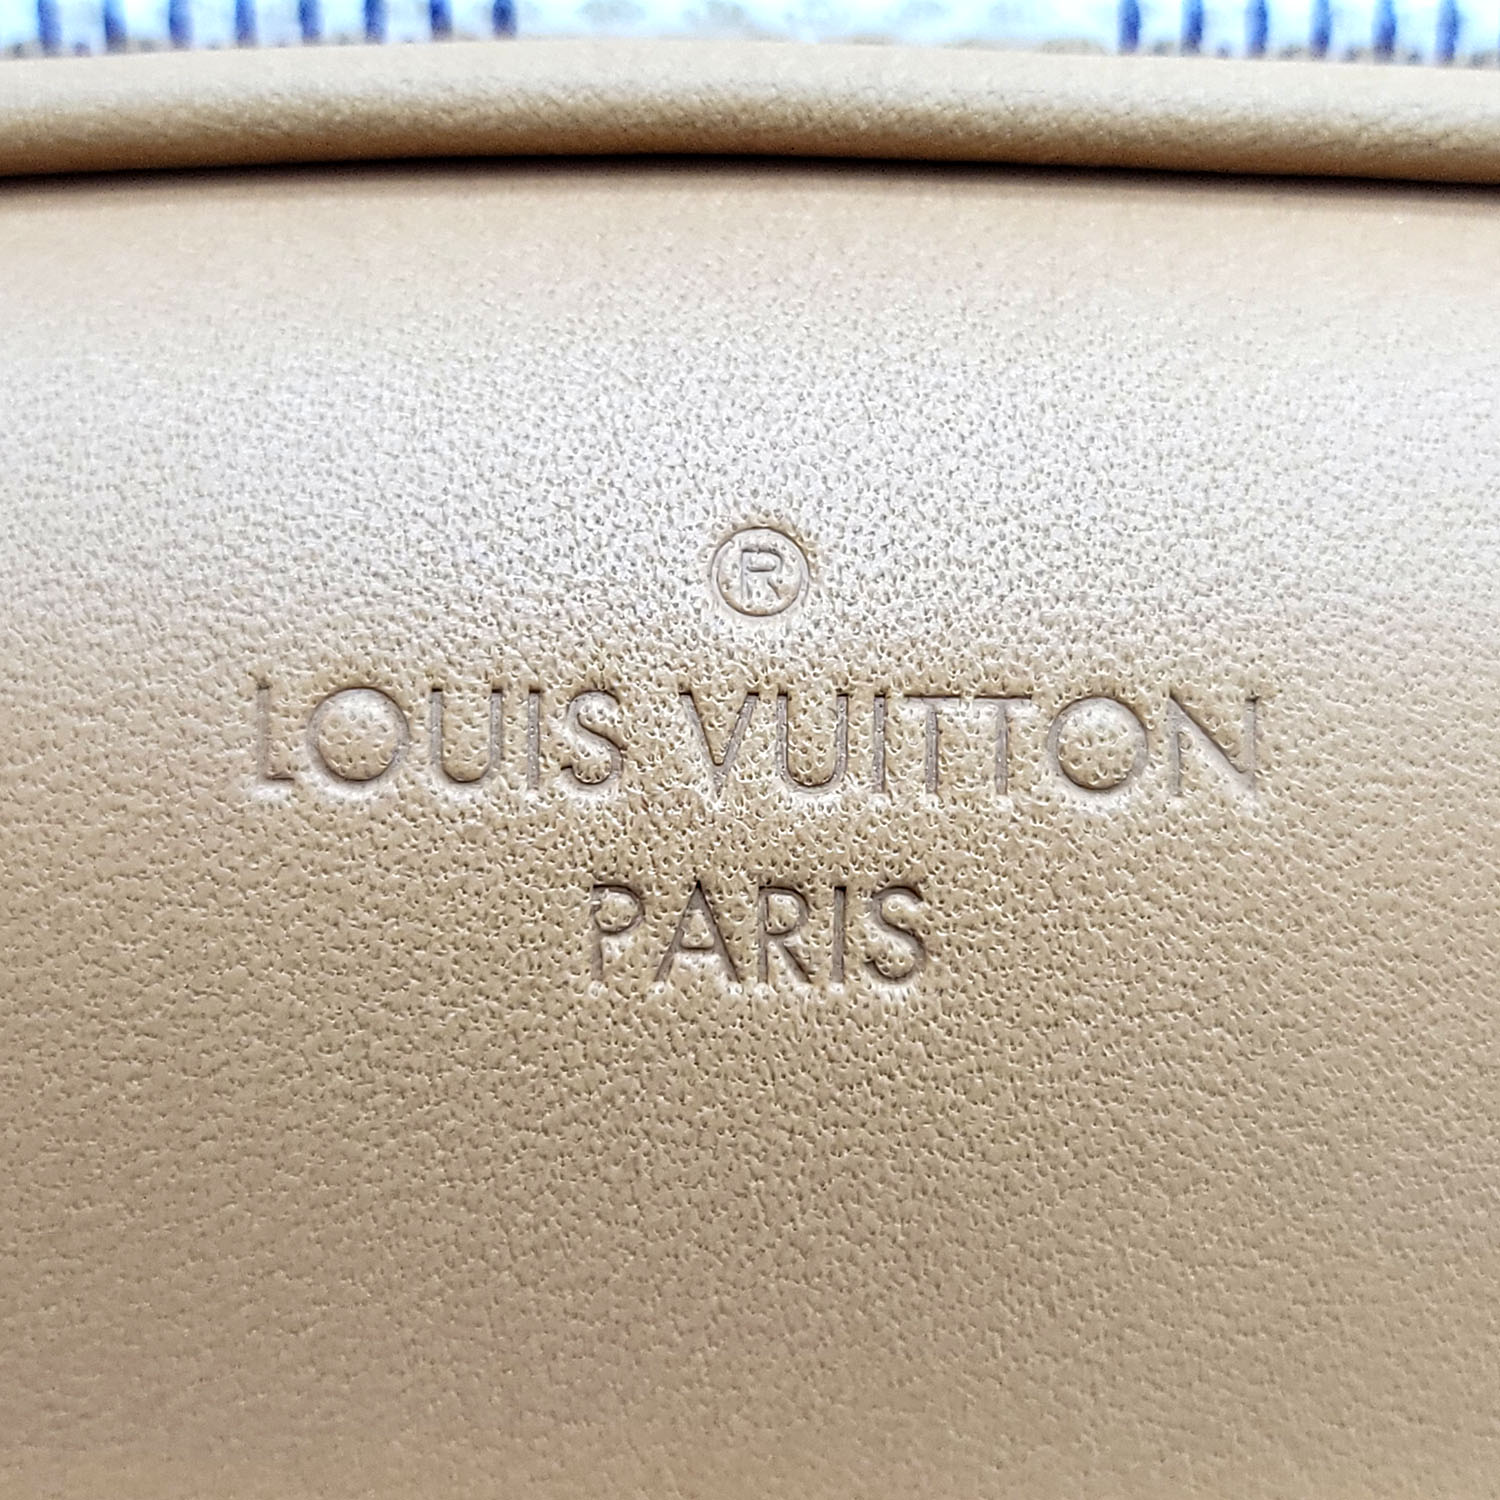 Louis Vuitton Damier Azur Mini Deauville N50048 - Luxuryeasy